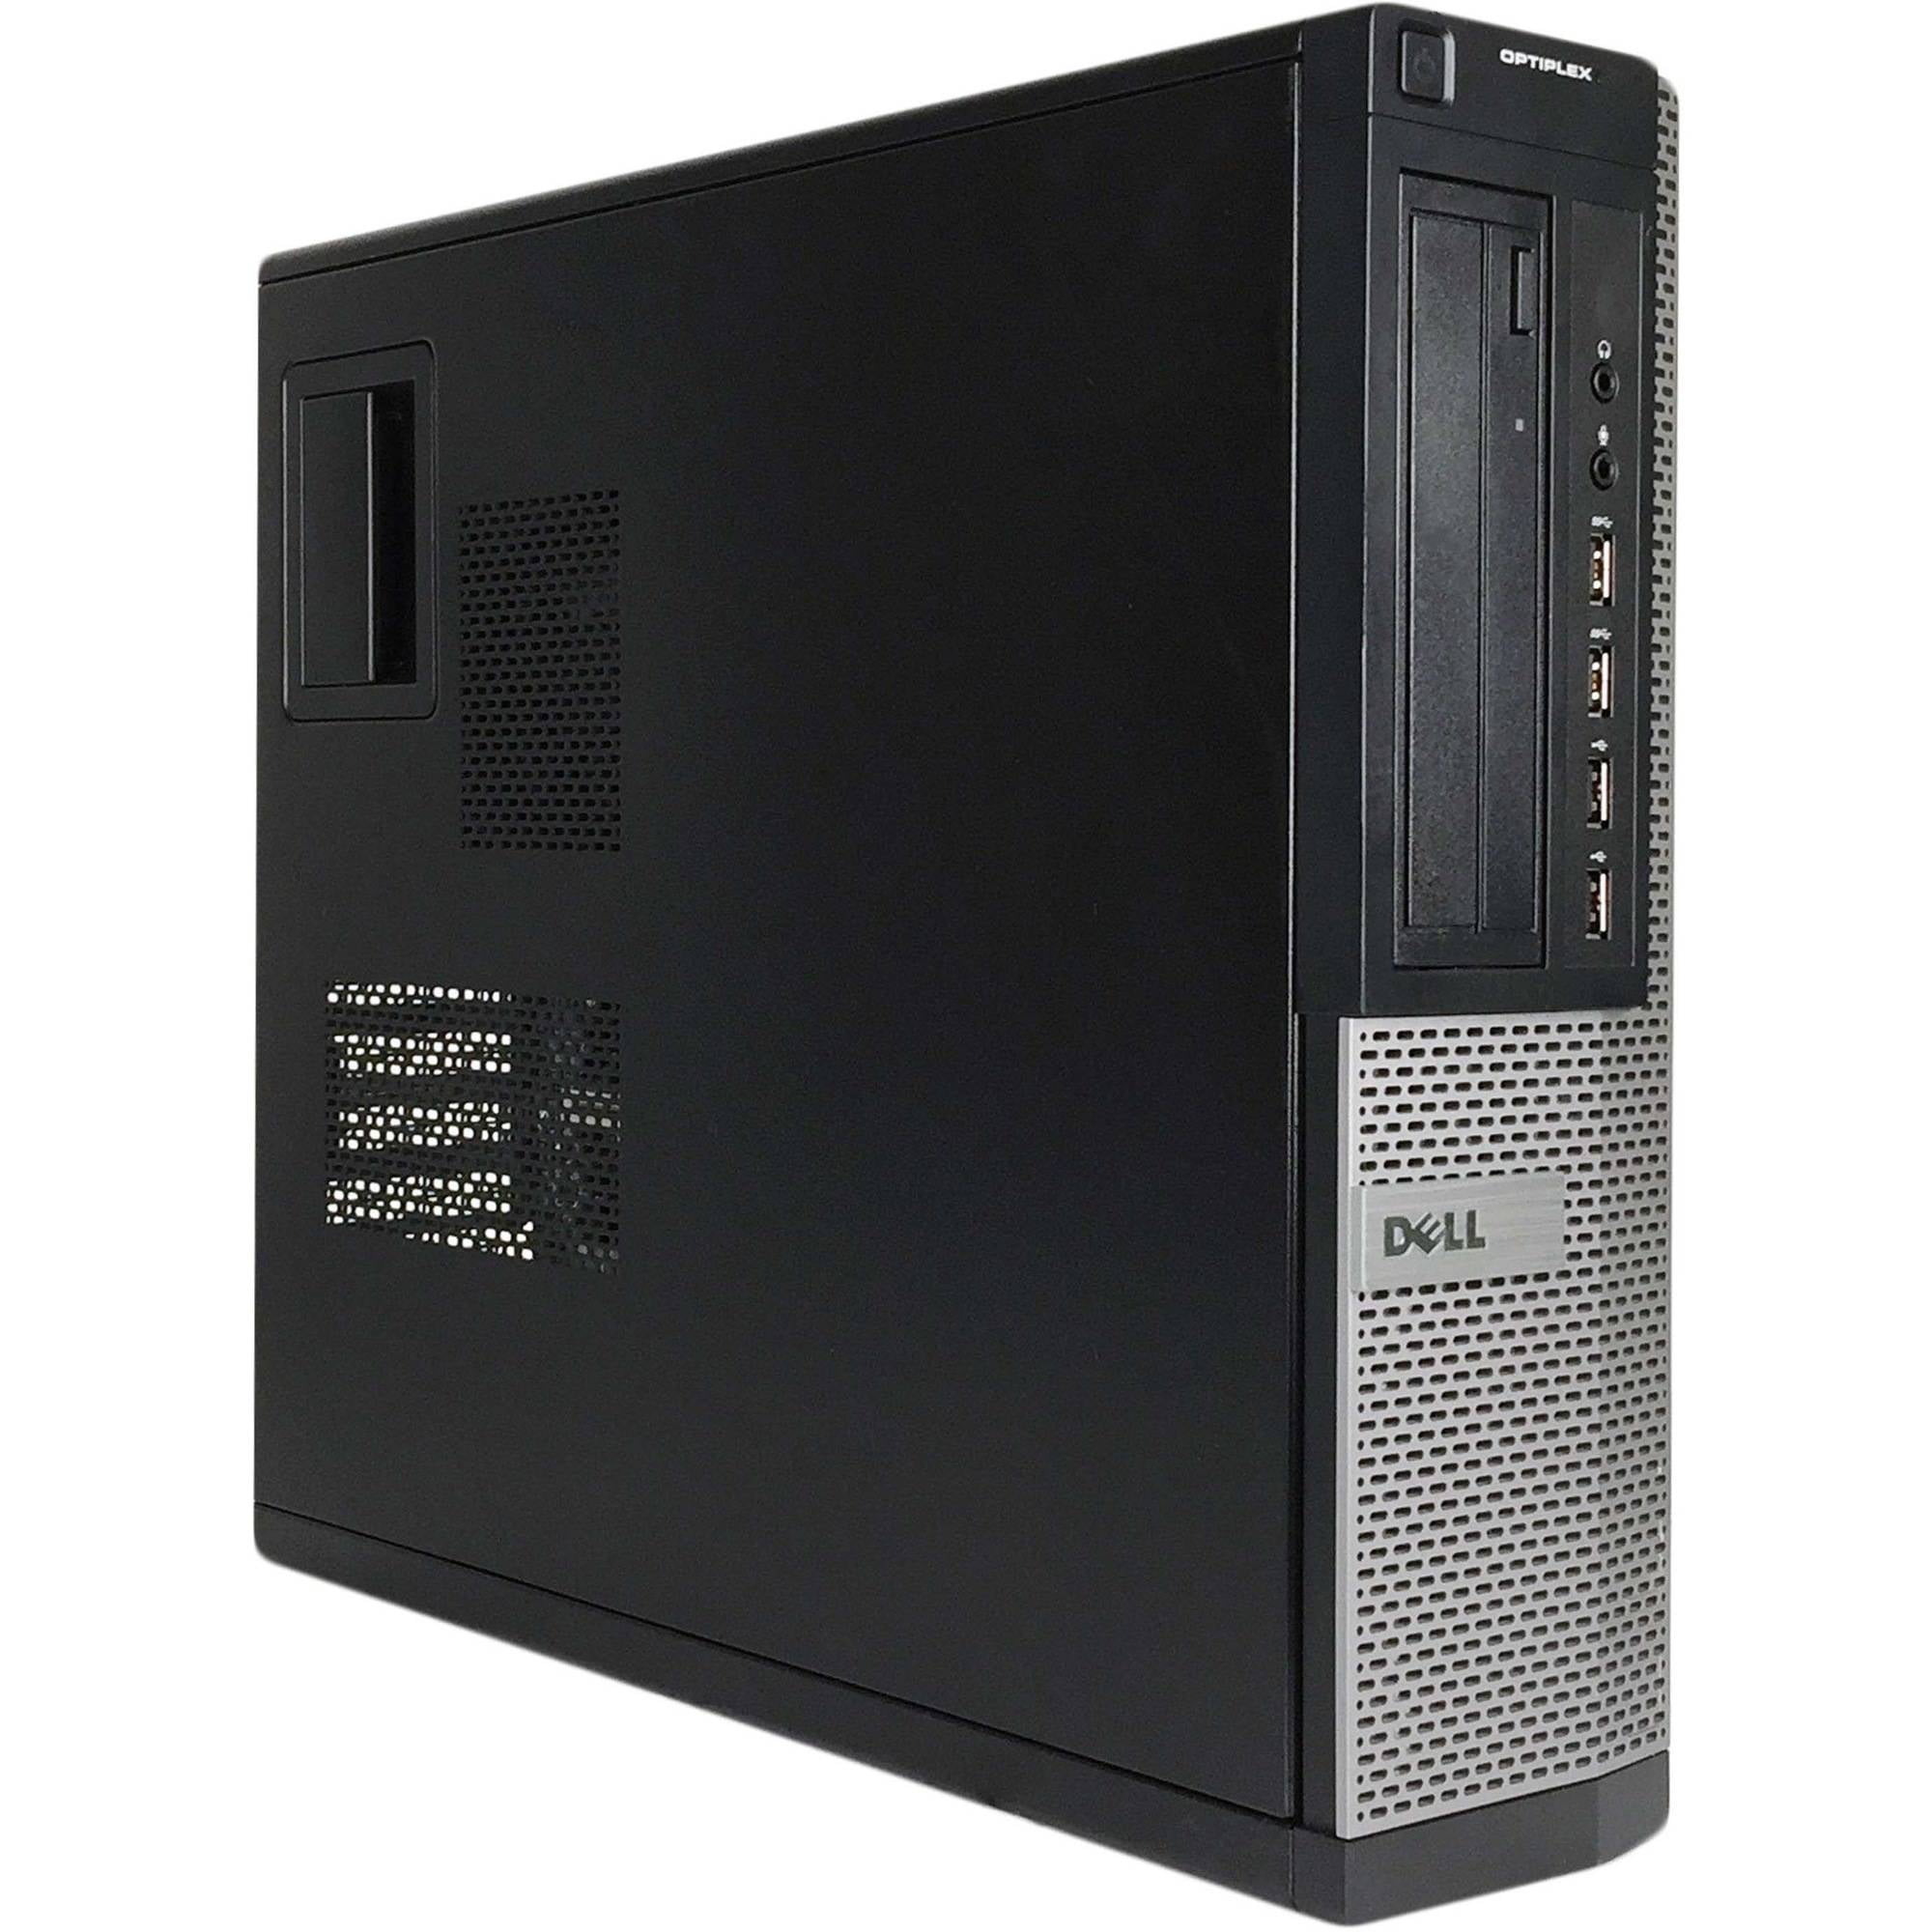 DELL Optiplex 7010 Desktop Computer PC, Intel Quad-Core i5, 250GB HDD